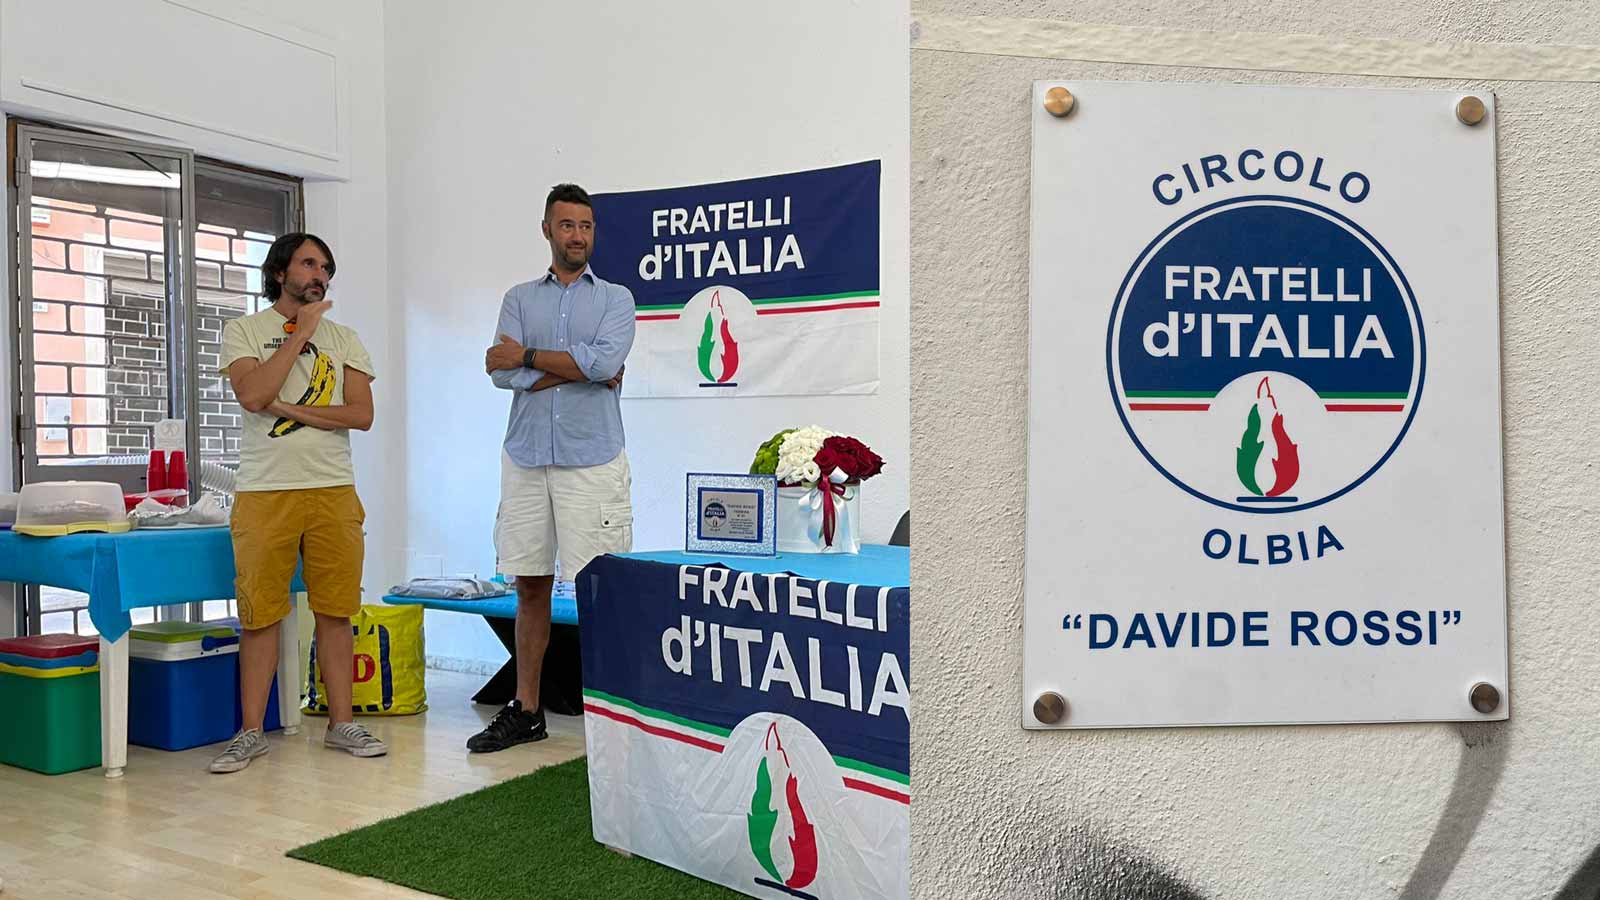 Olbia: Fratelli d'Italia dedica il circolo a Davide Rossi